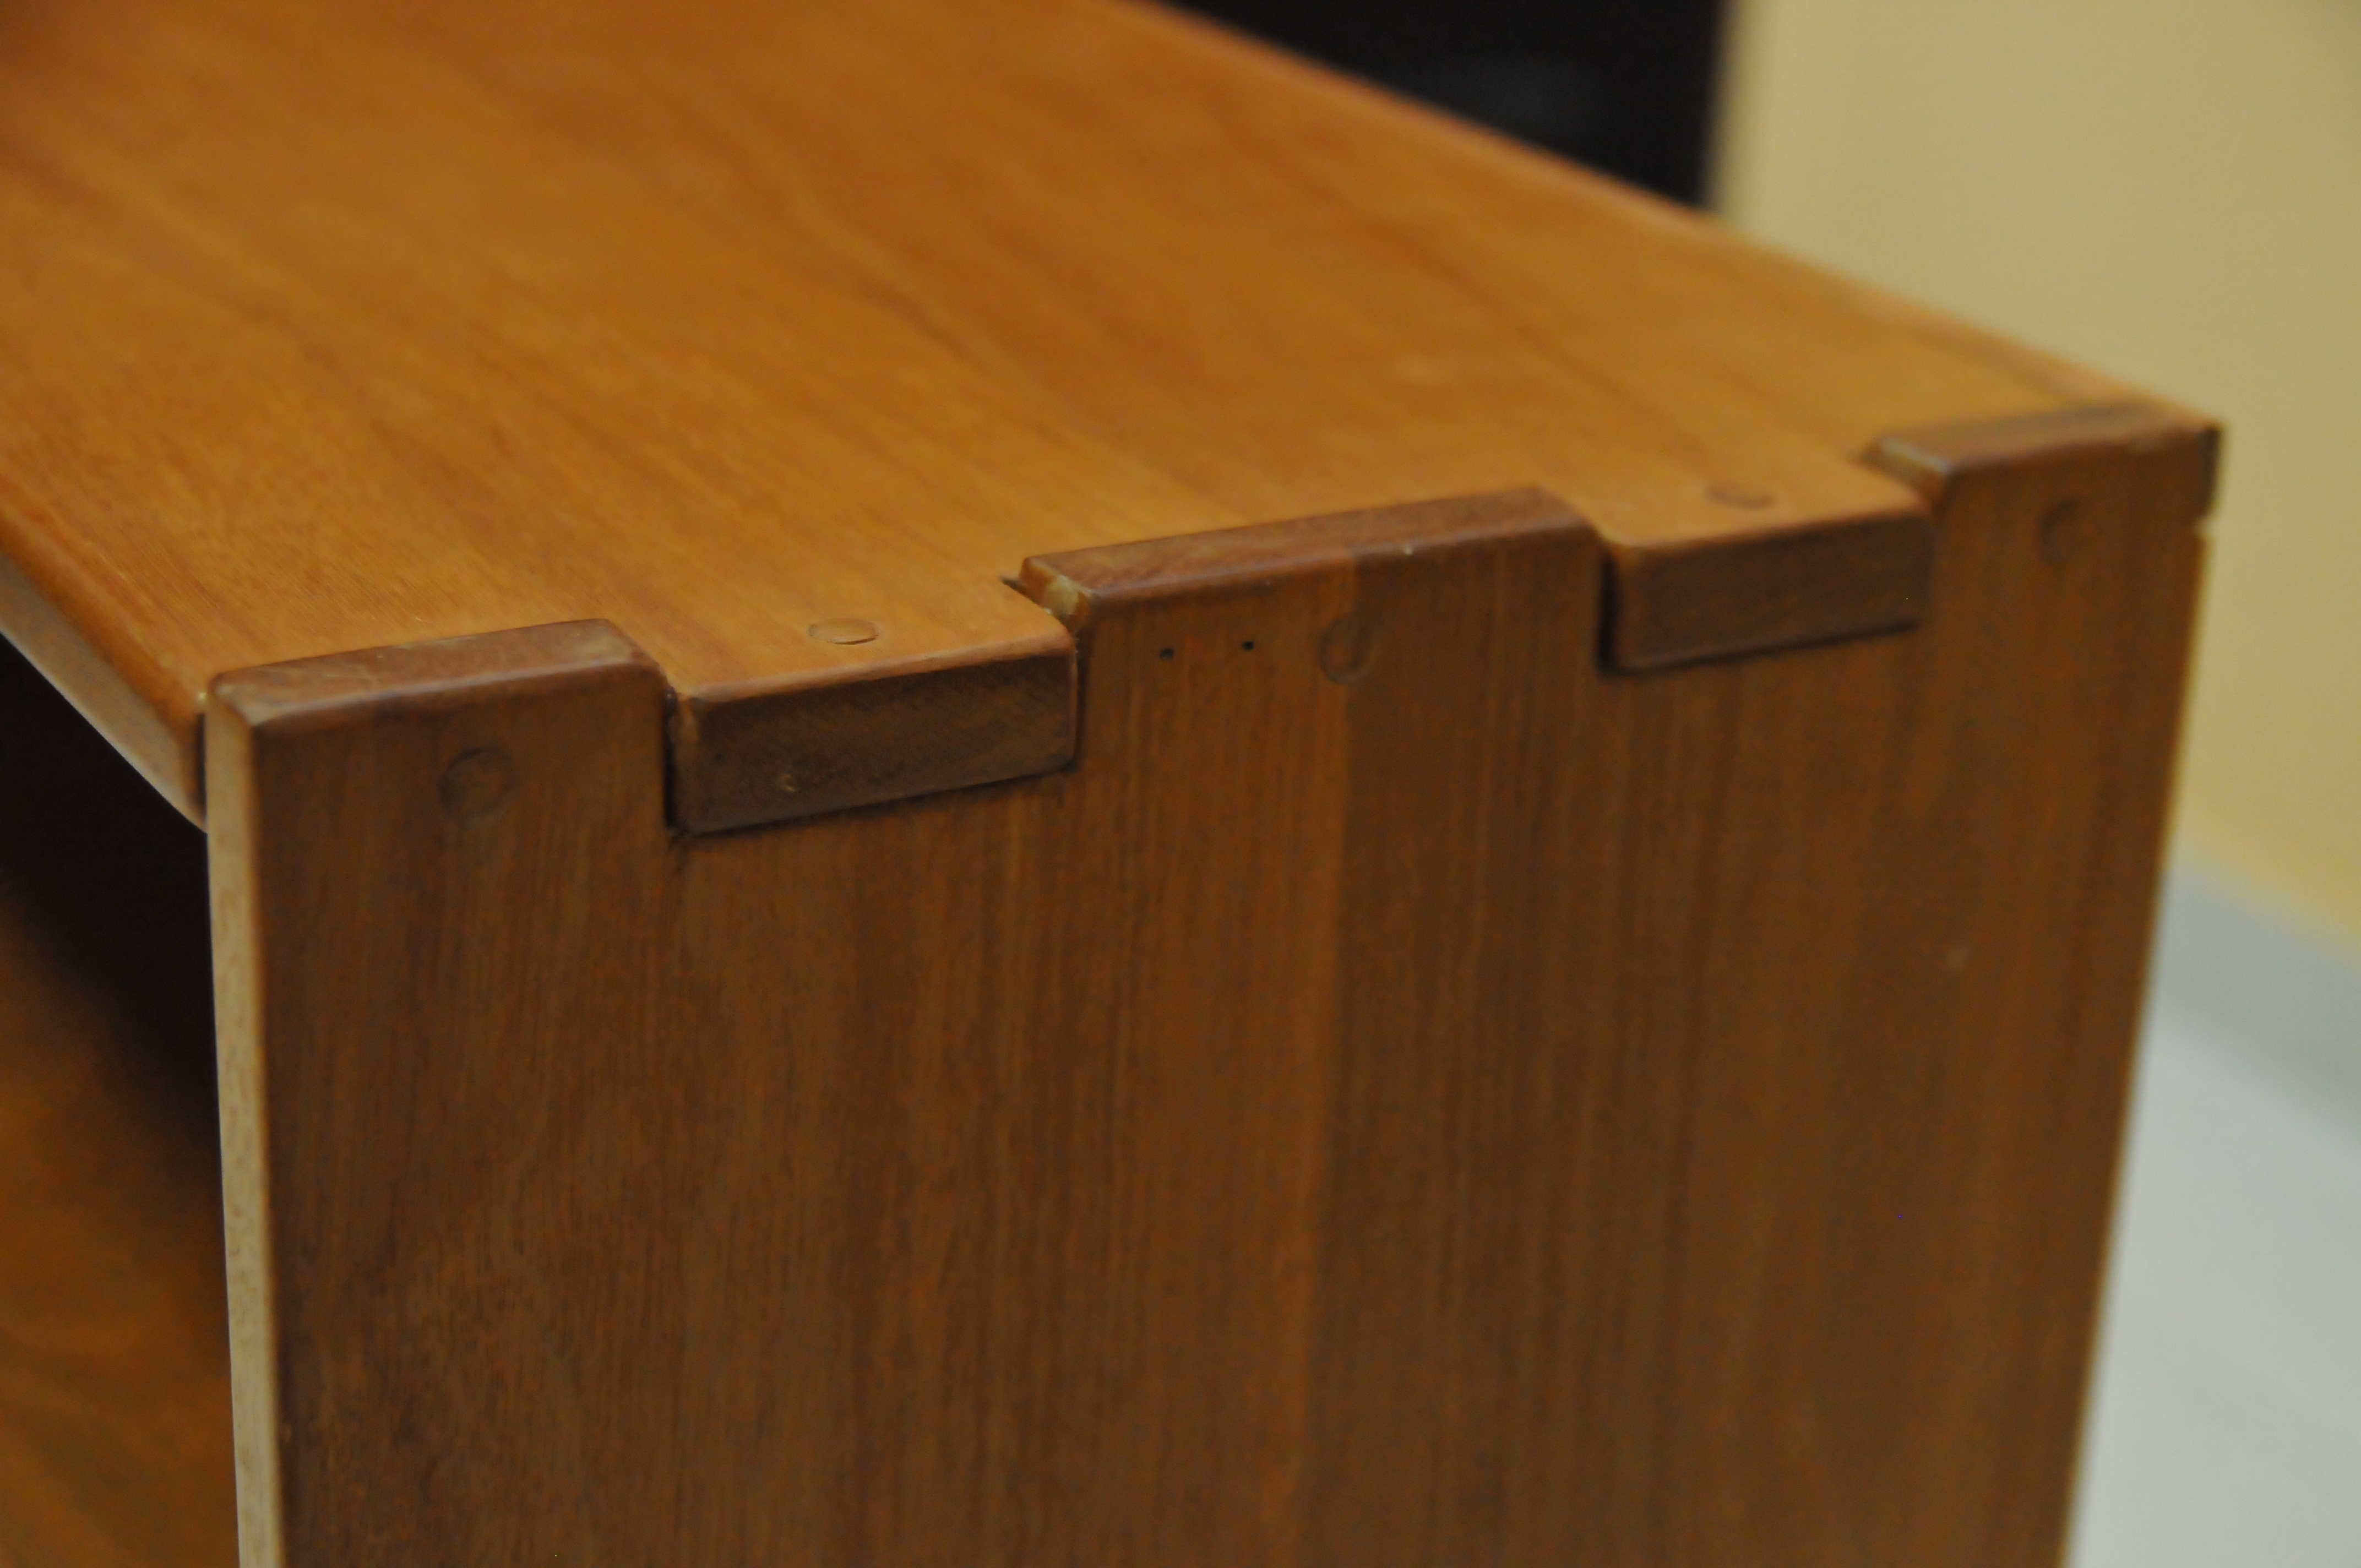 How I began woodworking | Greene and Greene Quality Furniture